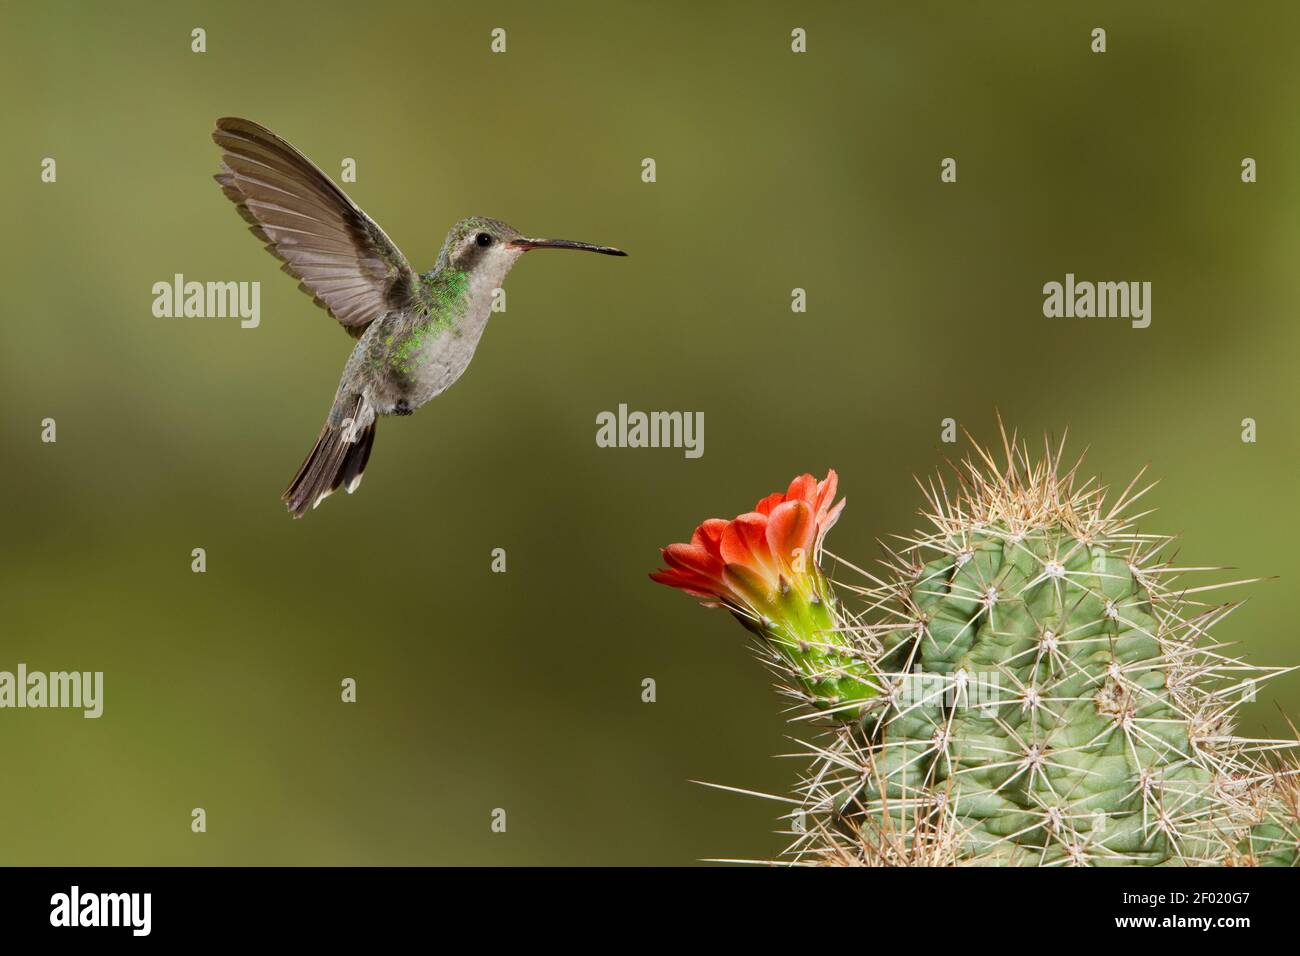 Broad-billed Hummingbird female, Cynanthus latirostris, feeding at cactus flower. Stock Photo